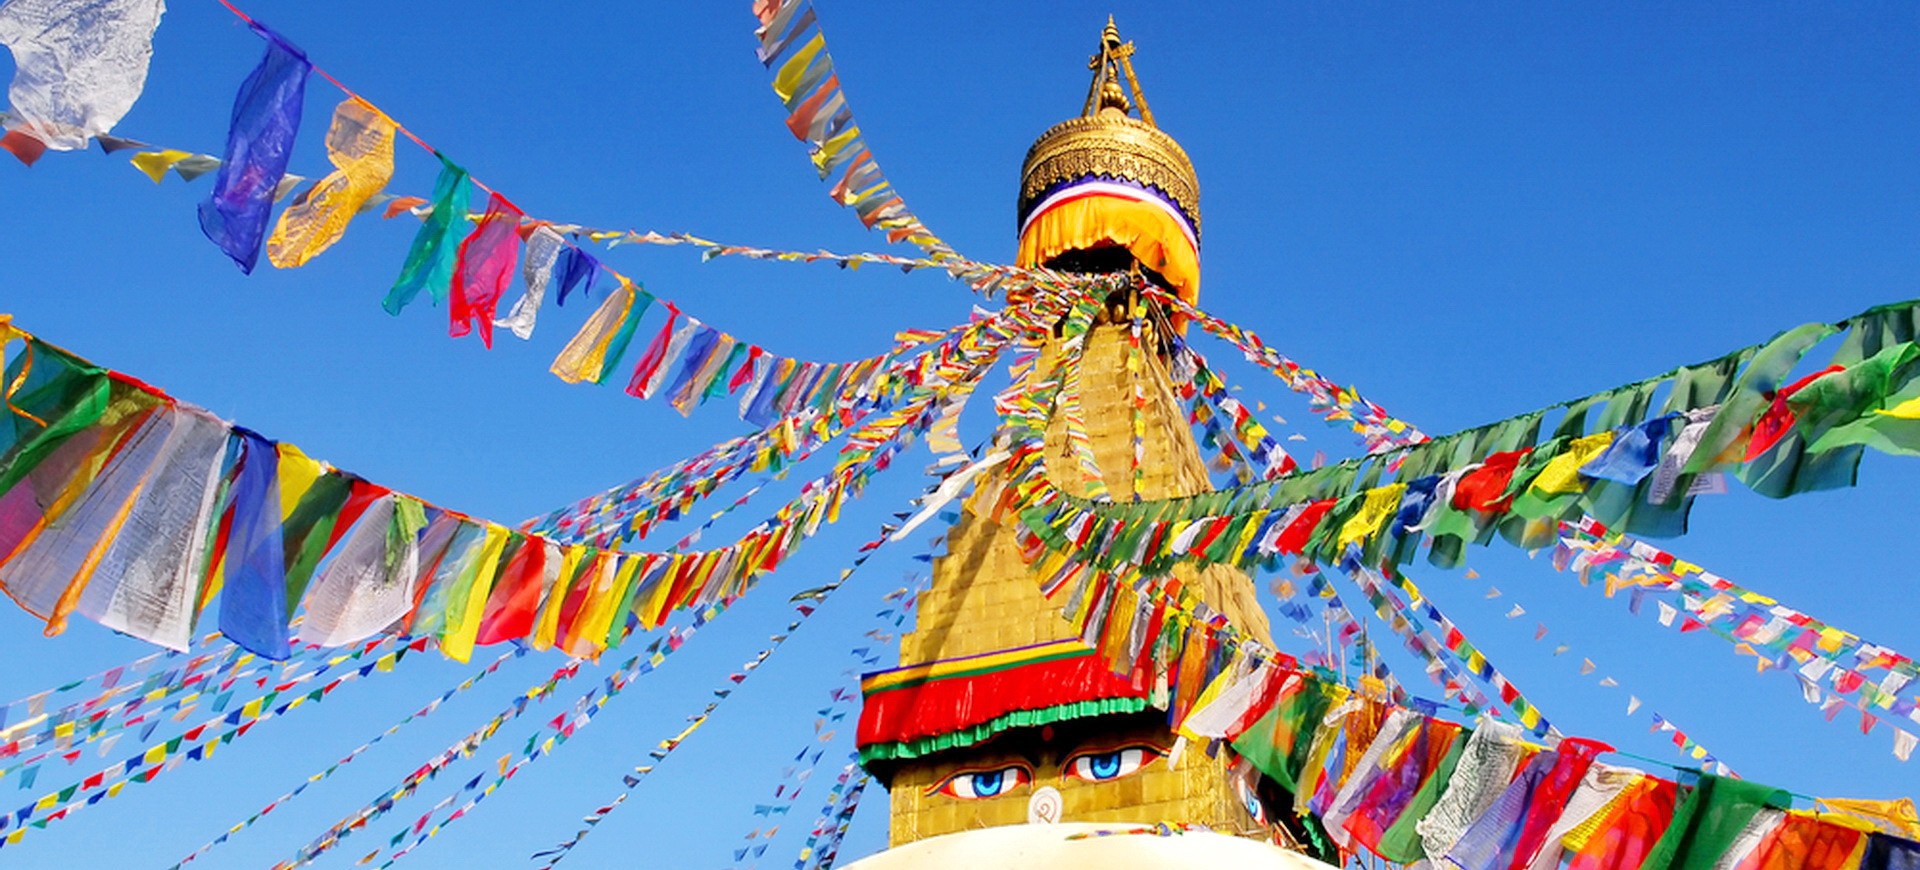 Népal Kathmandou Bodnath Stupa